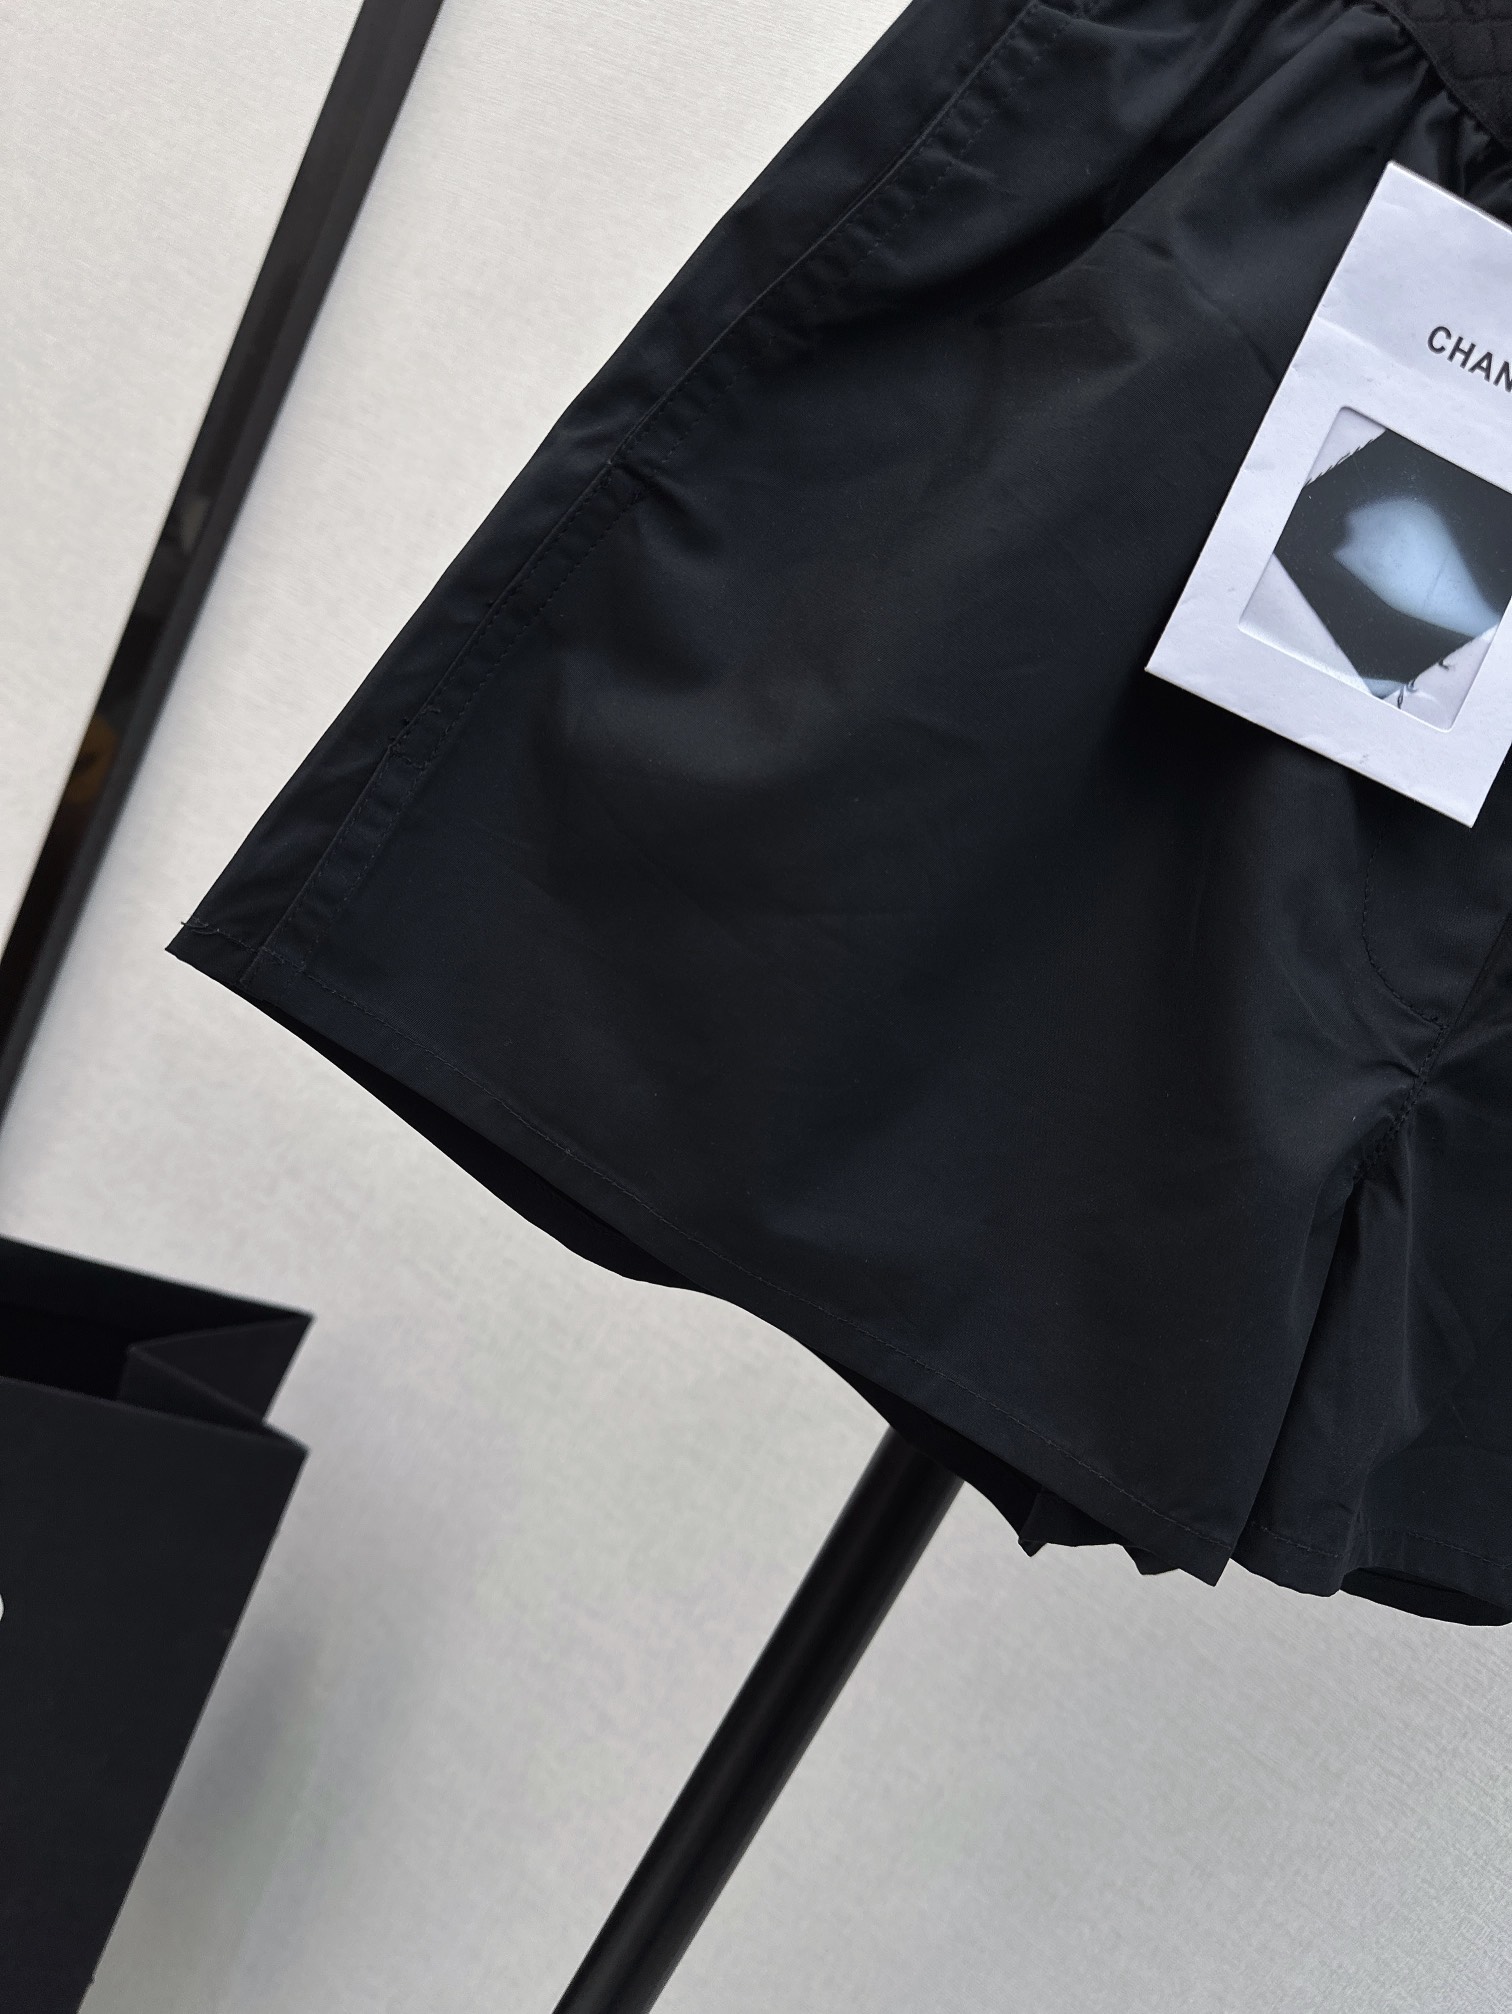 百搭单品C家24Ss春夏最新款经典字母织带短裤原版定制高支棉面料质感裤型都是一绝百搭时尚的神器结合专属标